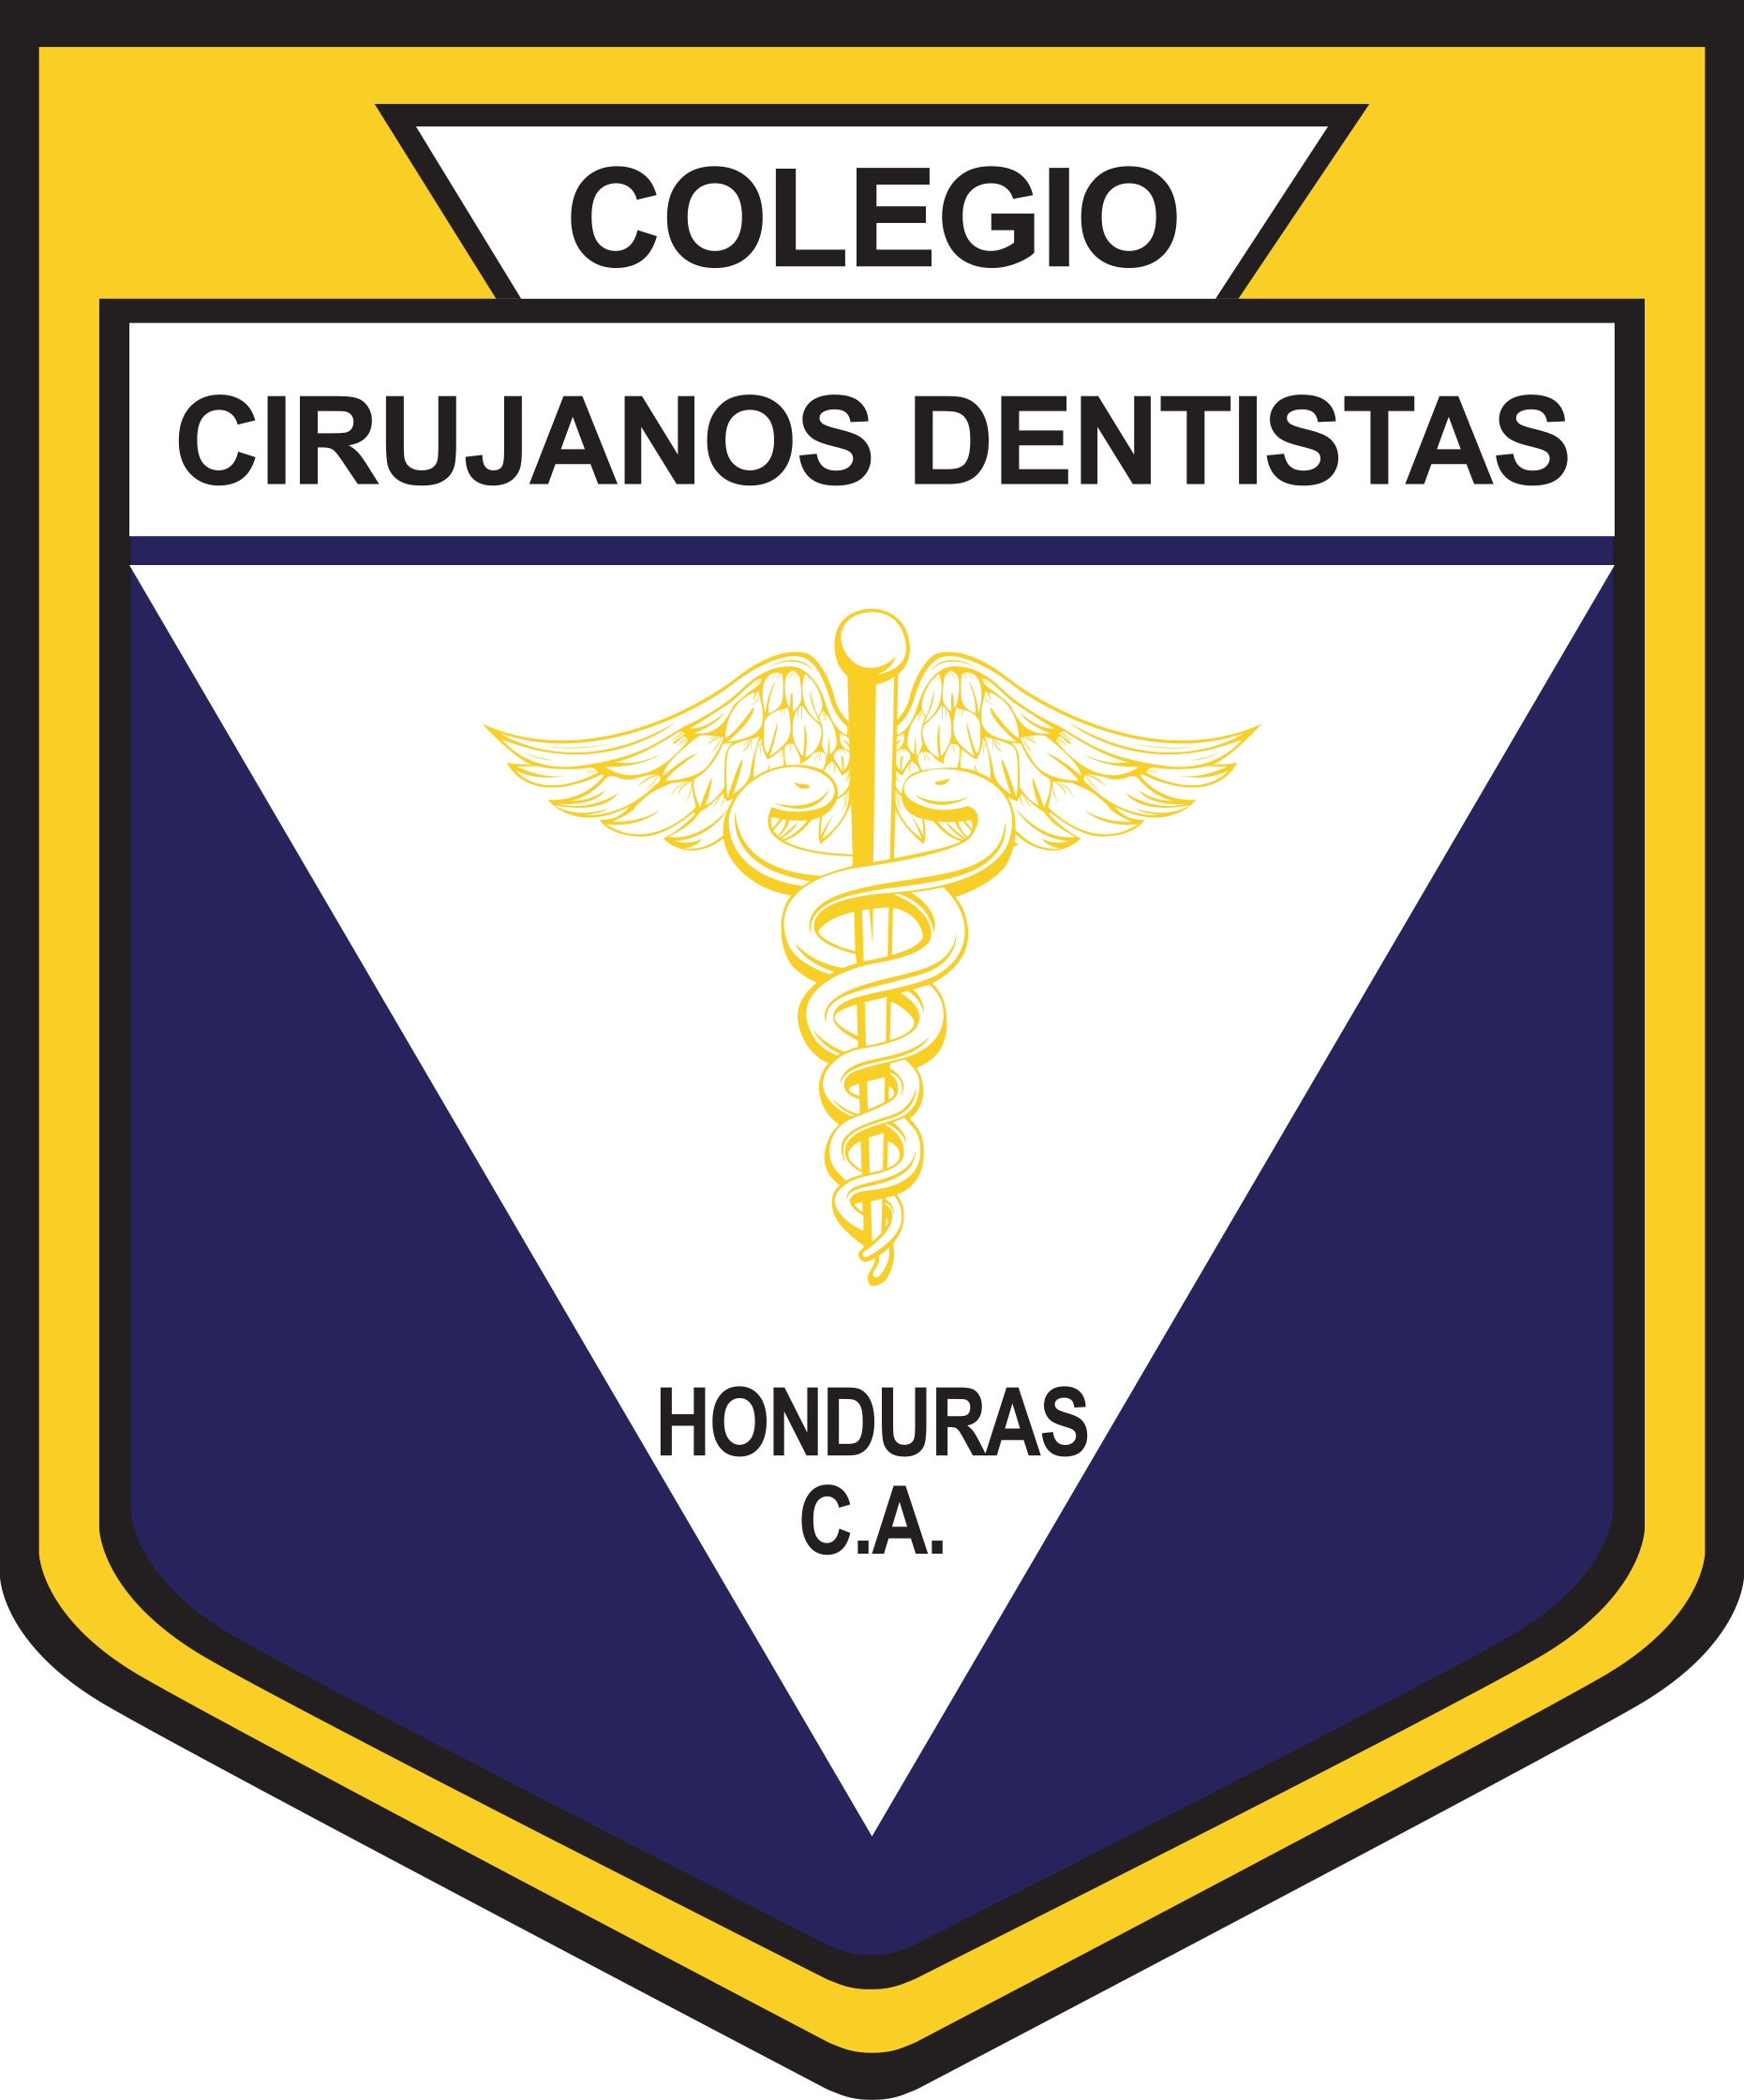 Colegio de Cirujanos Dentistas de Honduras